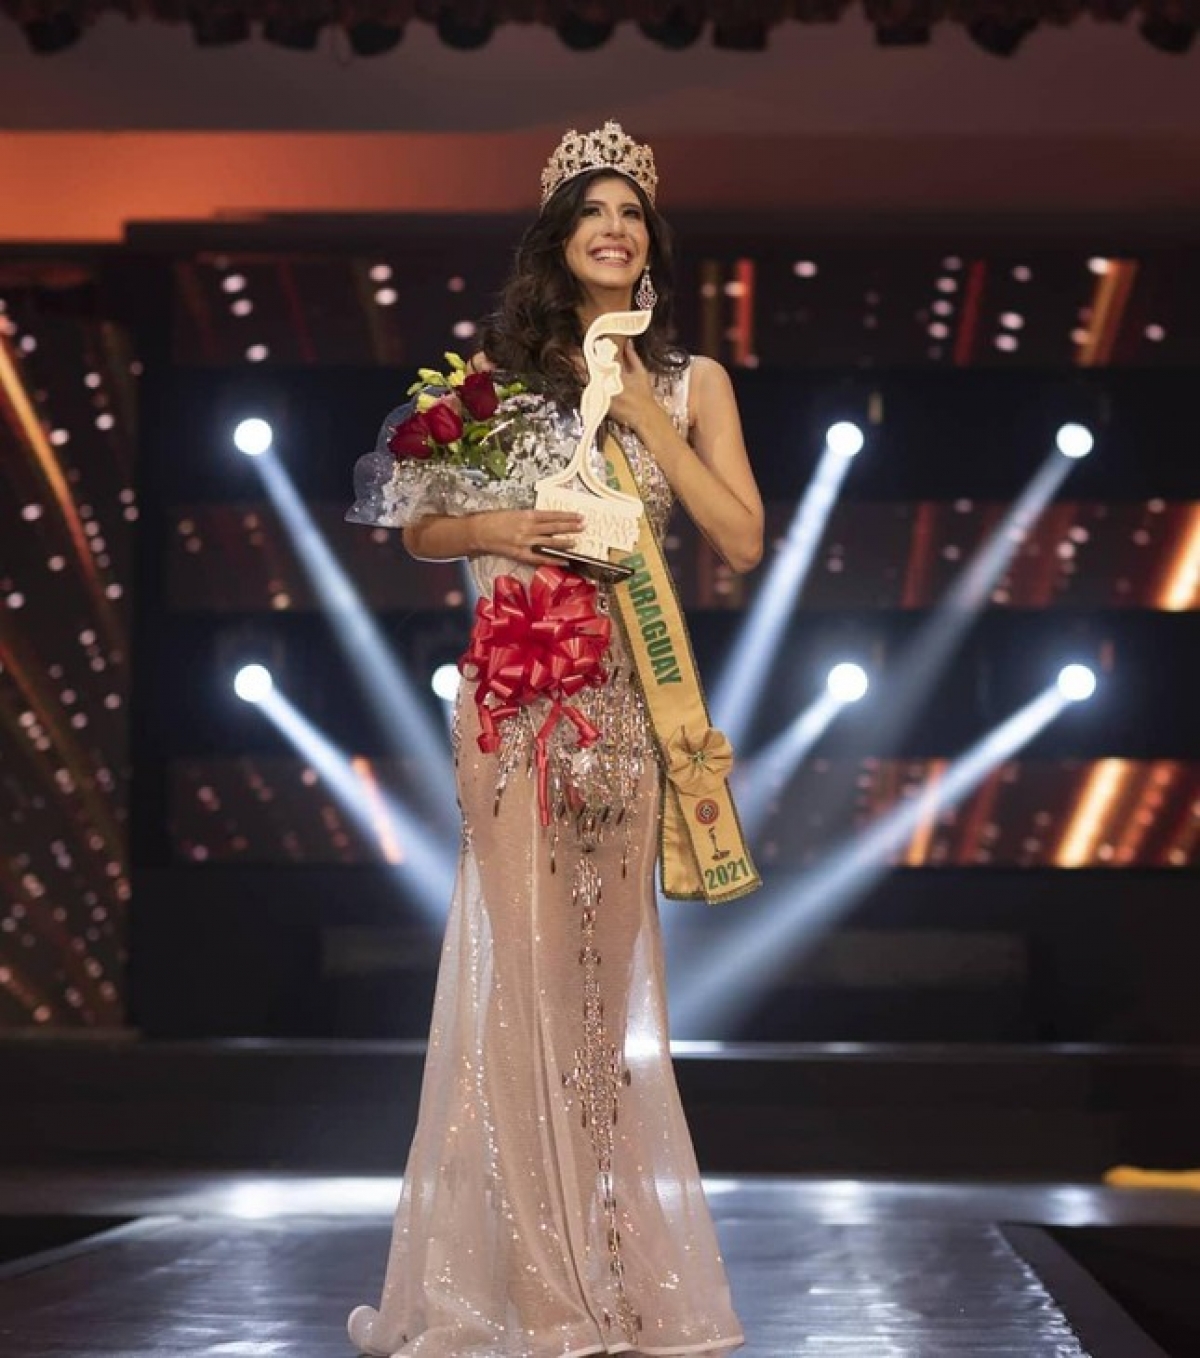 Nhan sắc Hoa hậu Hòa bình Paraguay 2021 gây tranh cãi trên diễn đàn sắc đẹp - Ảnh 1.